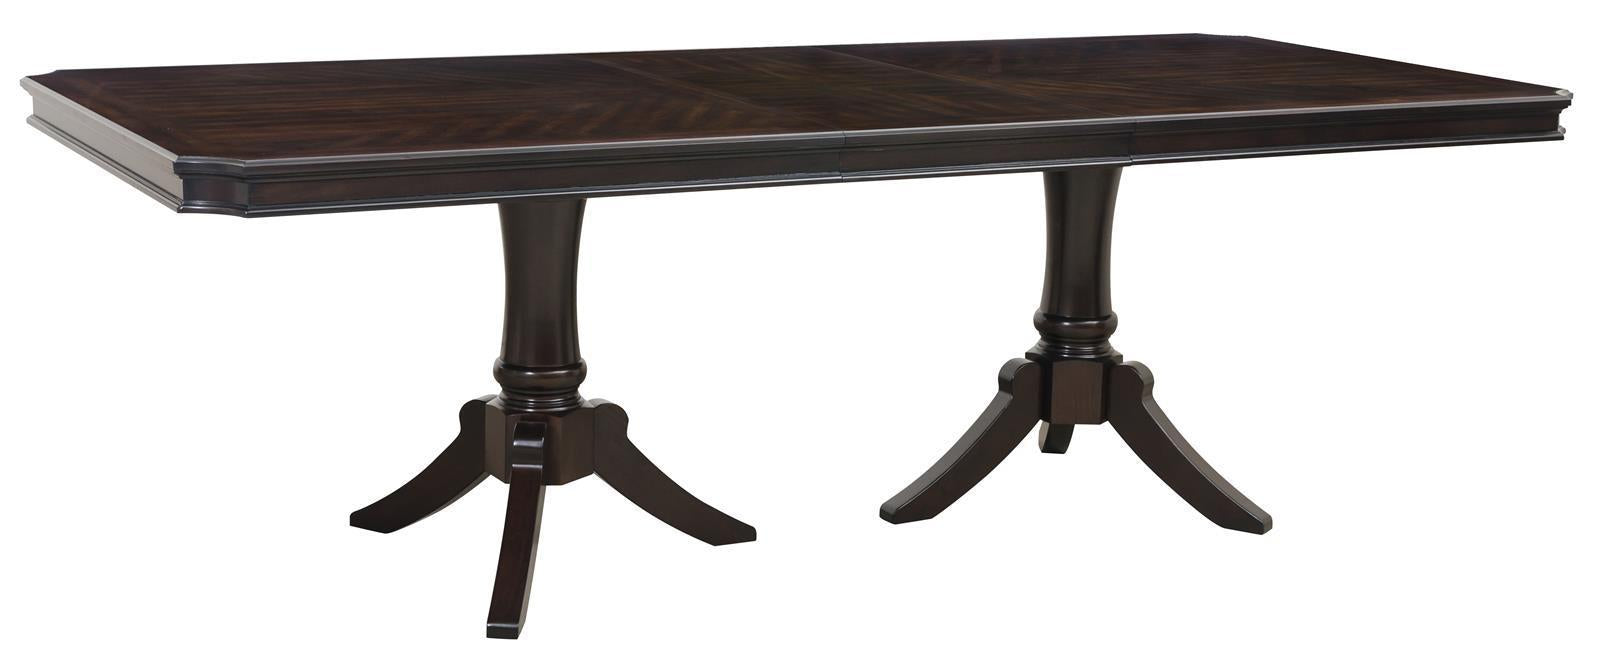 Homelegance Marston Rectangular Dining Table in Dark Cherry 2615DC-96